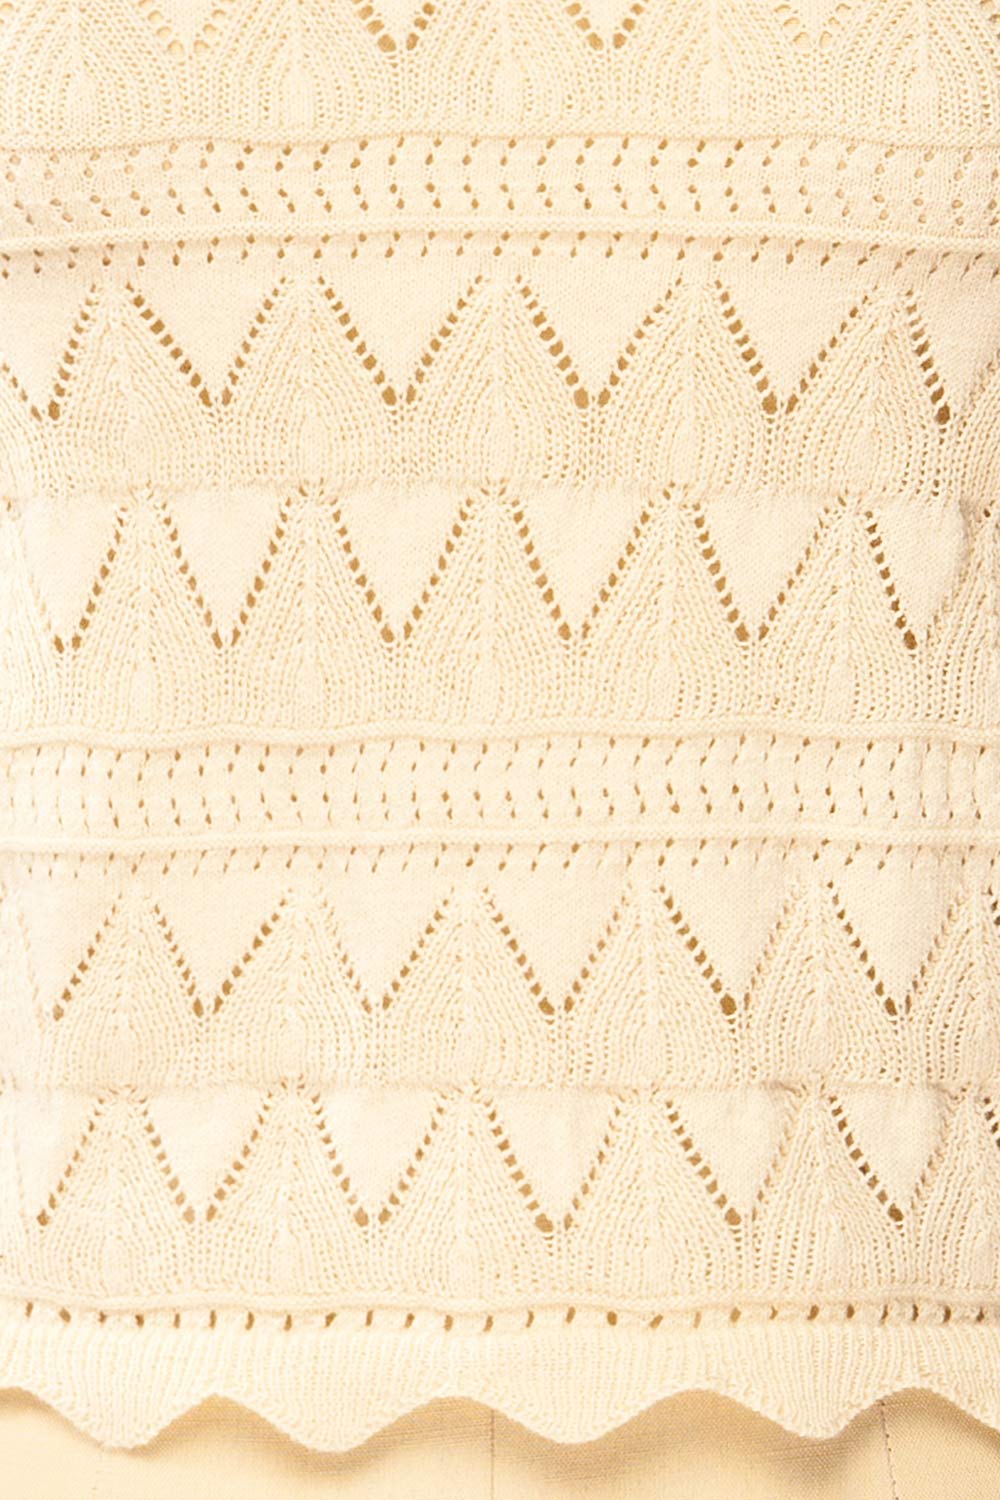 Tabara Beige Openwork Knit Top w/ Cut-Outs | La petite garçonne fabric